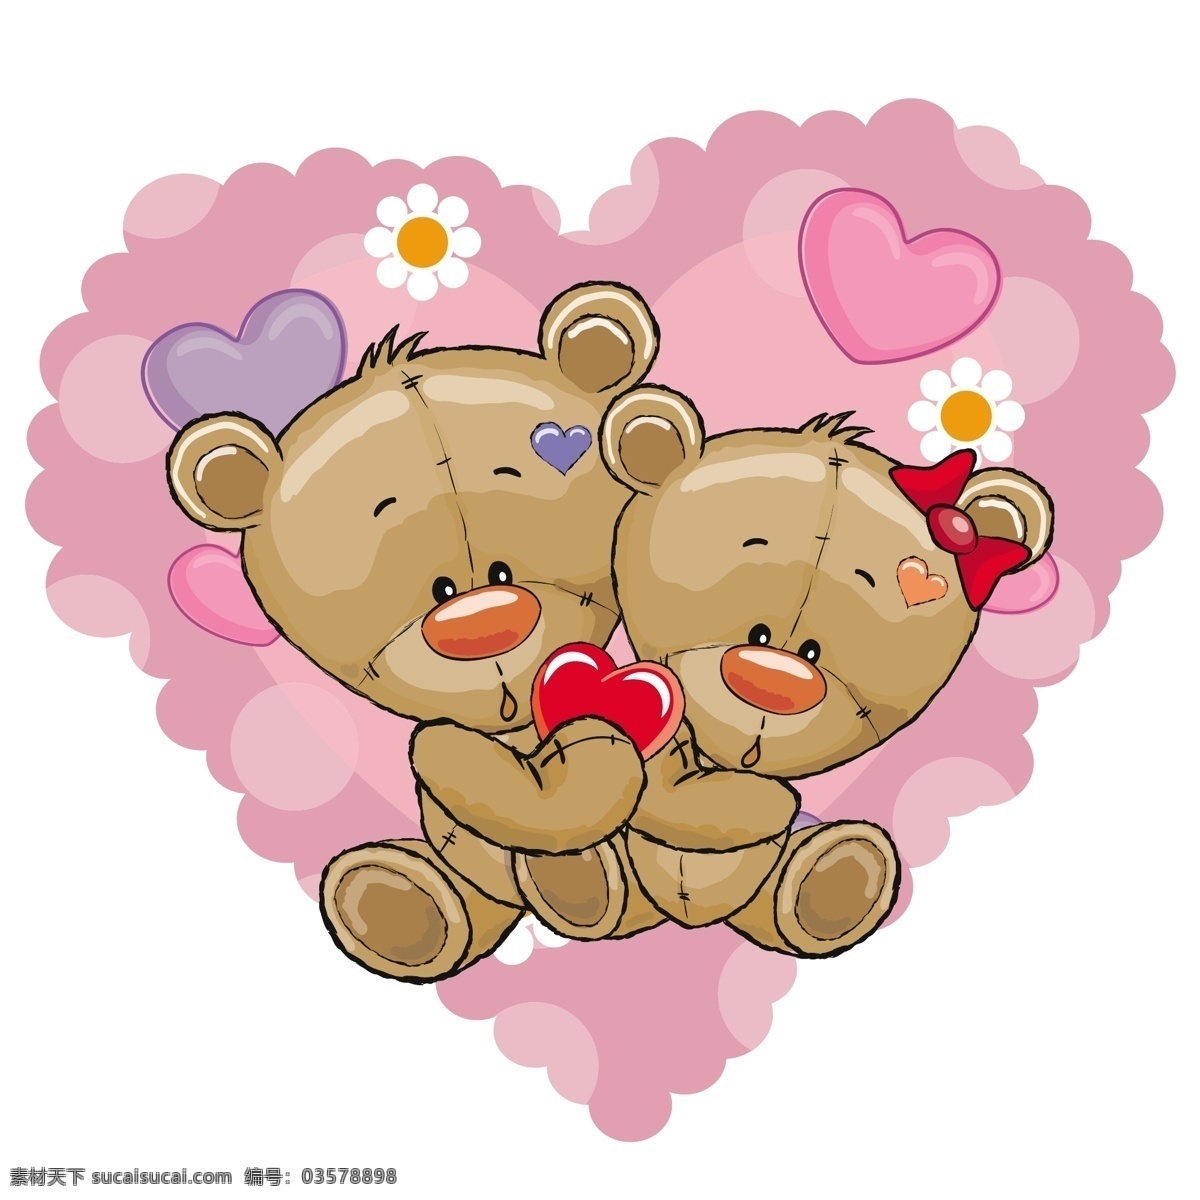 可爱 泰迪 熊 背景 矢量 爱心 花朵 泰迪熊 小熊